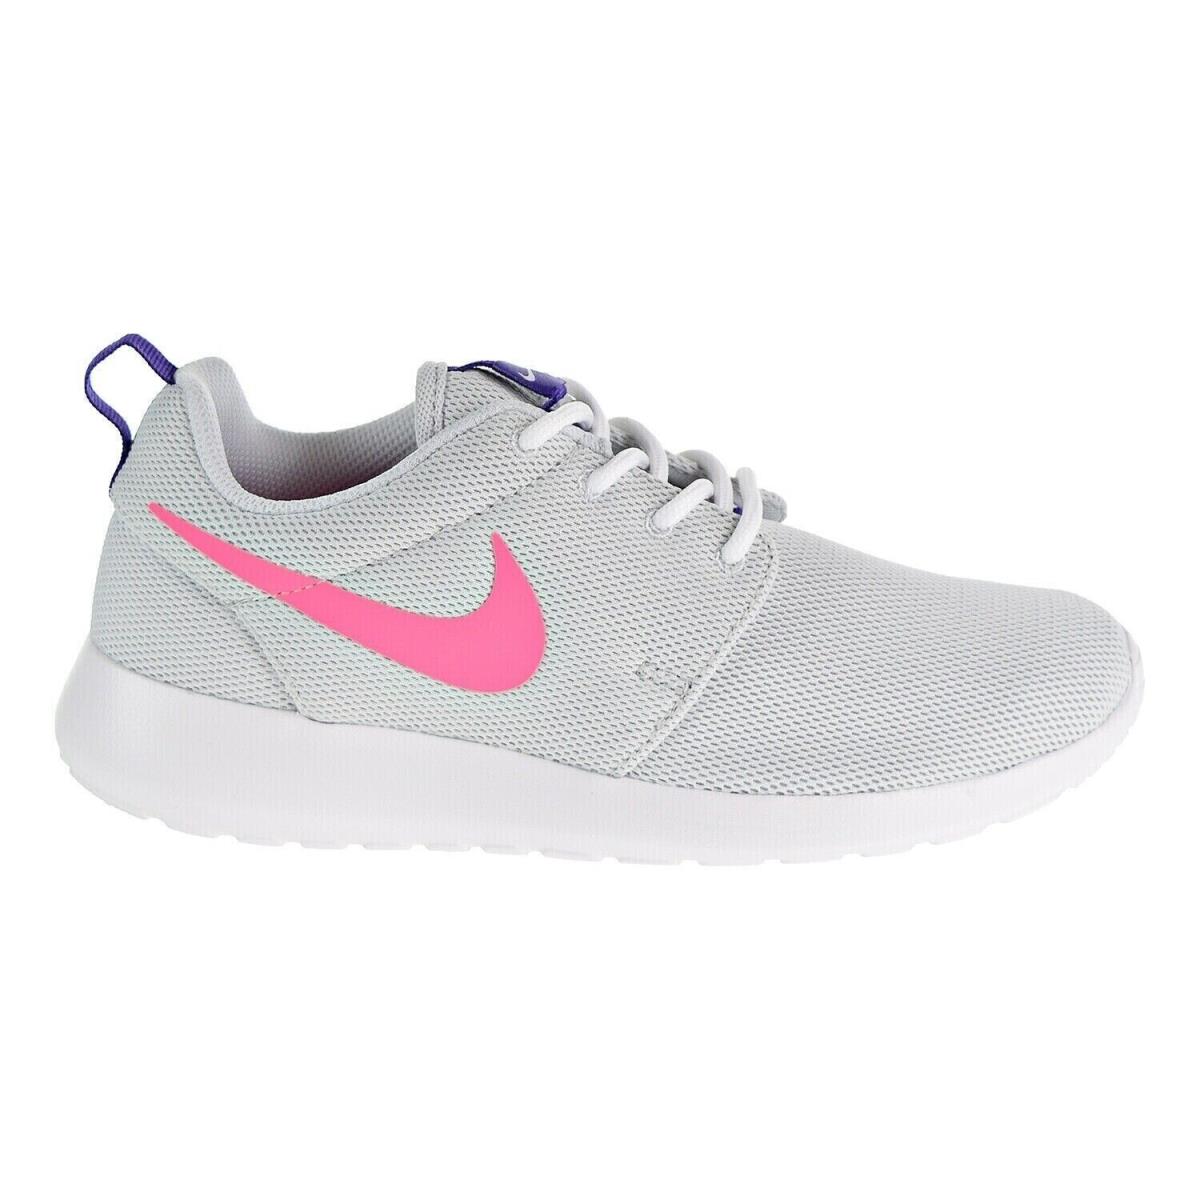 Nike Roshe One 844994-007 Women Platinum/laser Pink Running Sneaker Shoes FNK233 - Platinum/Laser Pink